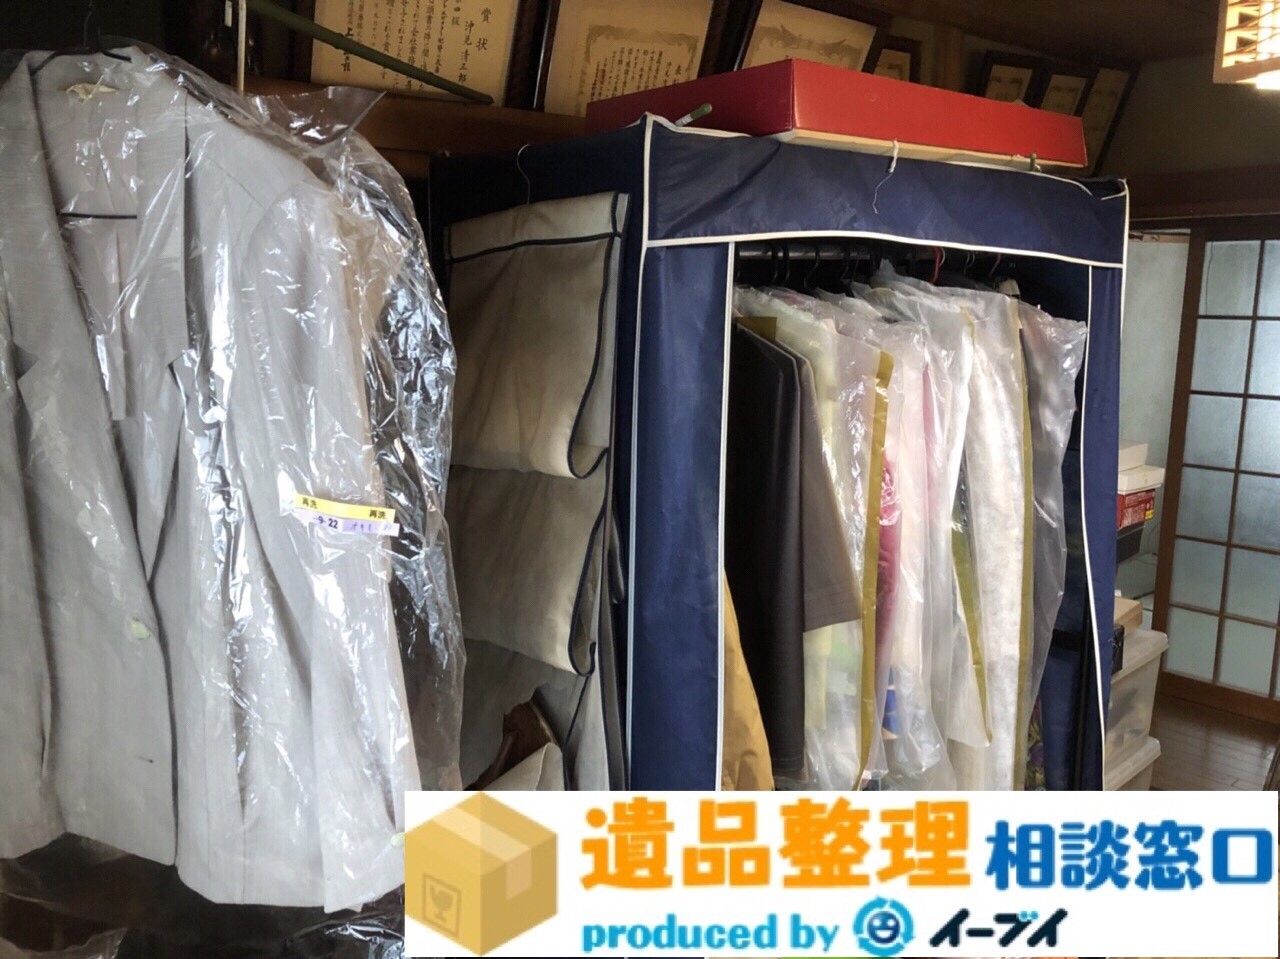 大阪府泉大津市で遺品整理に伴い押し入れの布団や衣類の処分をしました。のアイキャッチ